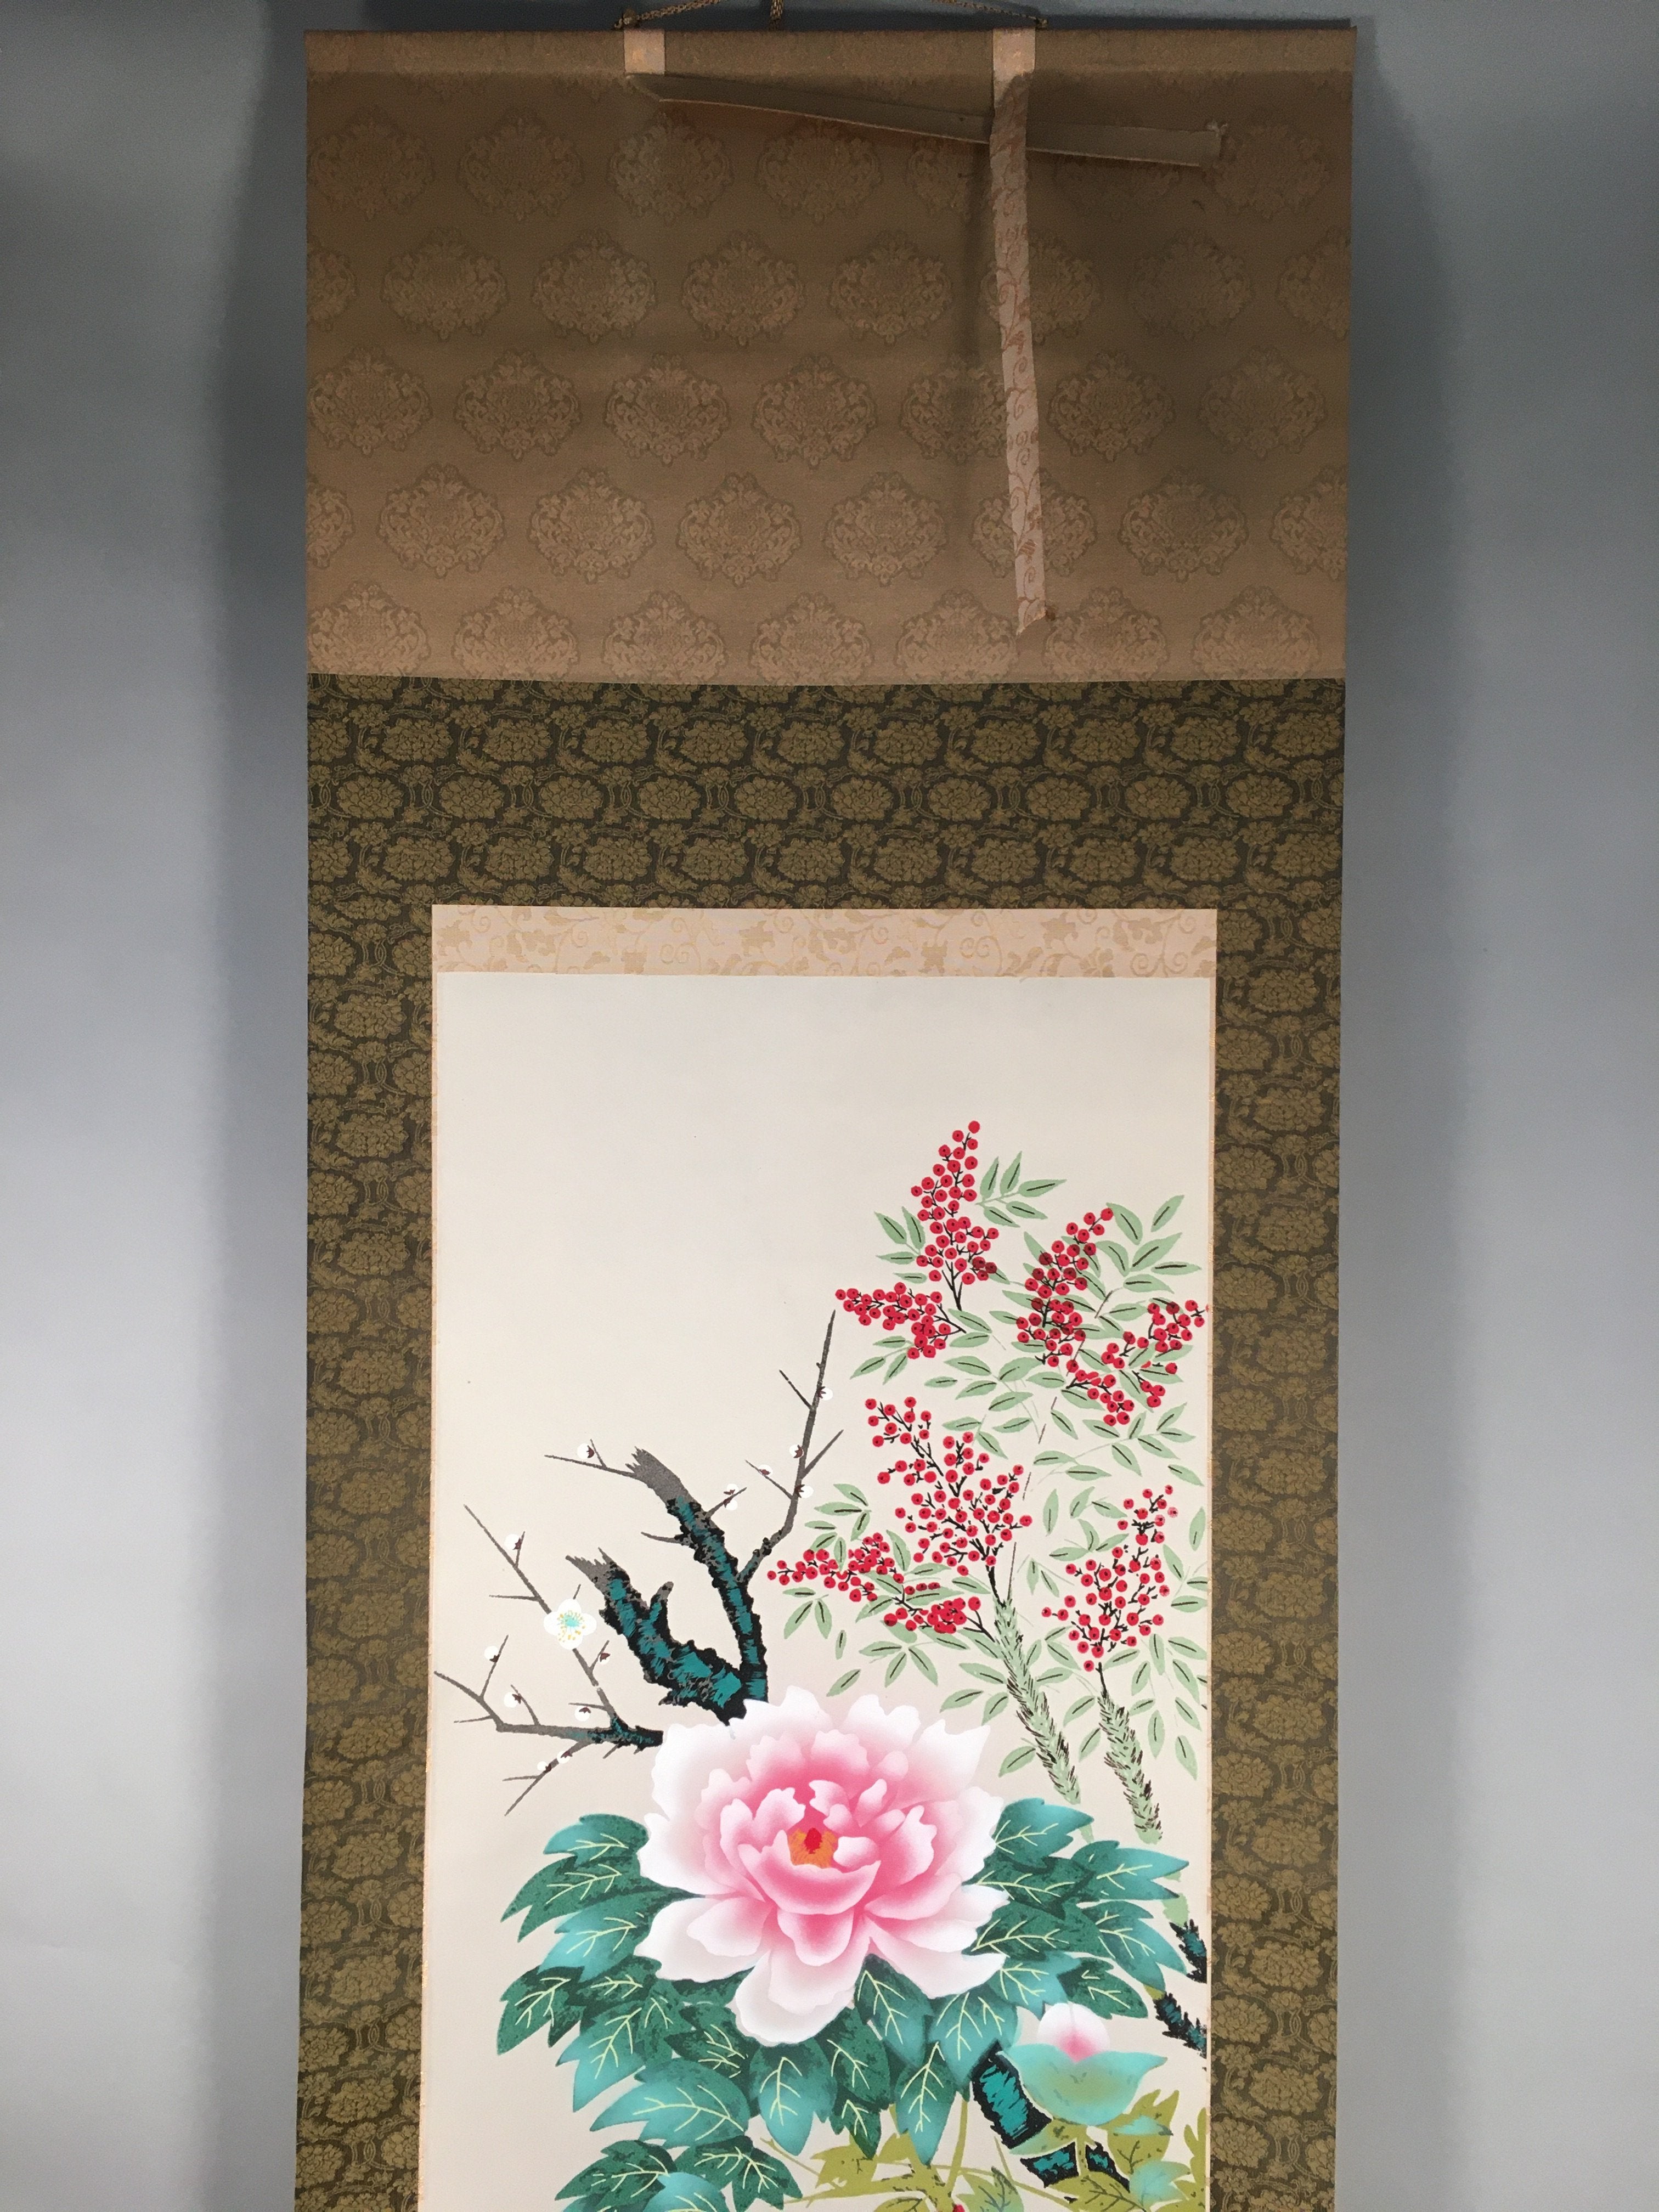 Japanese Hanging Scroll Vtg Kakejiku Kakemono Painting Flower Season SC577